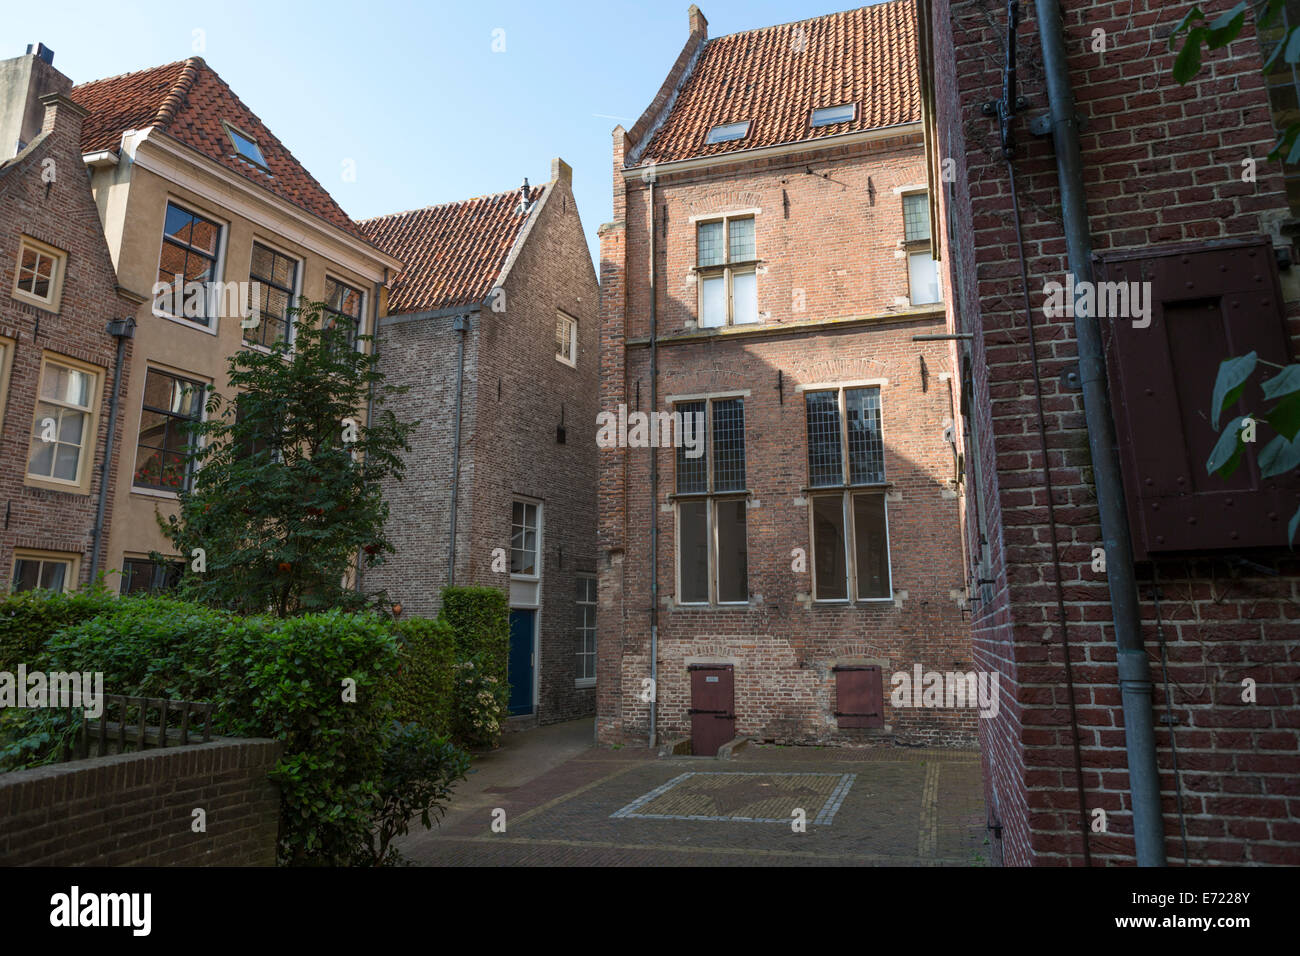 An einem ruhigen Ort mit alten Häusern mitten in Zwolle, eine Hansestadt in den Niederlanden (Provinz Overijssel) anzeigen Stockfoto